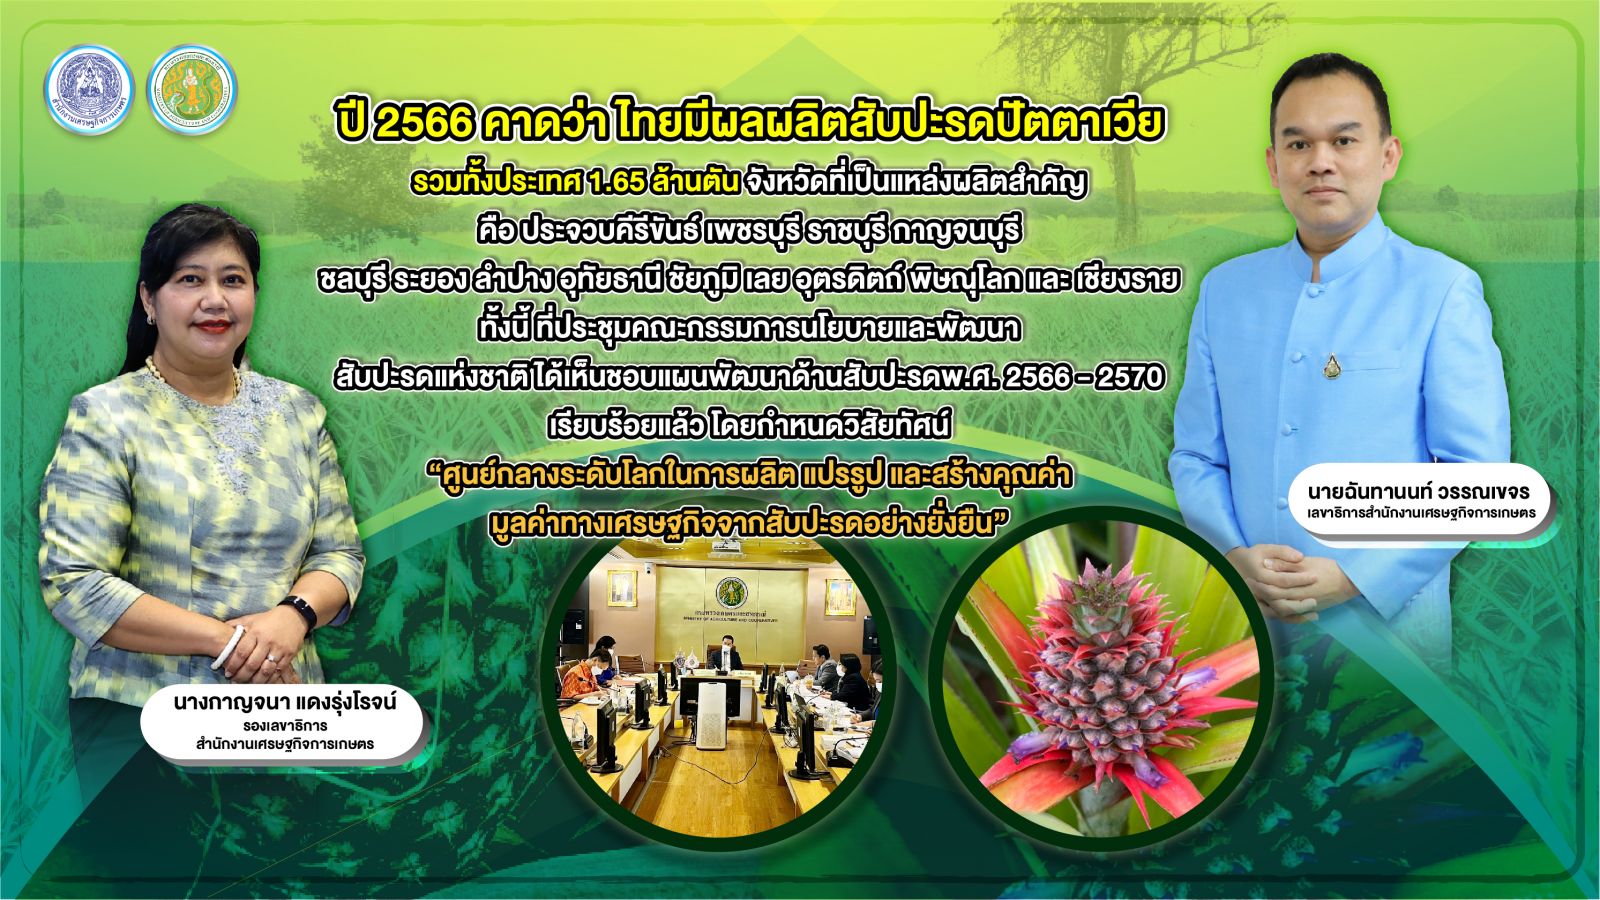 สับปะรดปัตตาเวียไทย ปีนี้ให้ผลผลิต 1.65 ล้านตัน ด้านคณะกรรมการนโยบายและพัฒนาสับปะรดแห่งชาติ ไฟเขียว แผนพัฒนาด้านสับปะรด 5 ปี ผลักดันสู่ศูนย์กลางระดับโลก